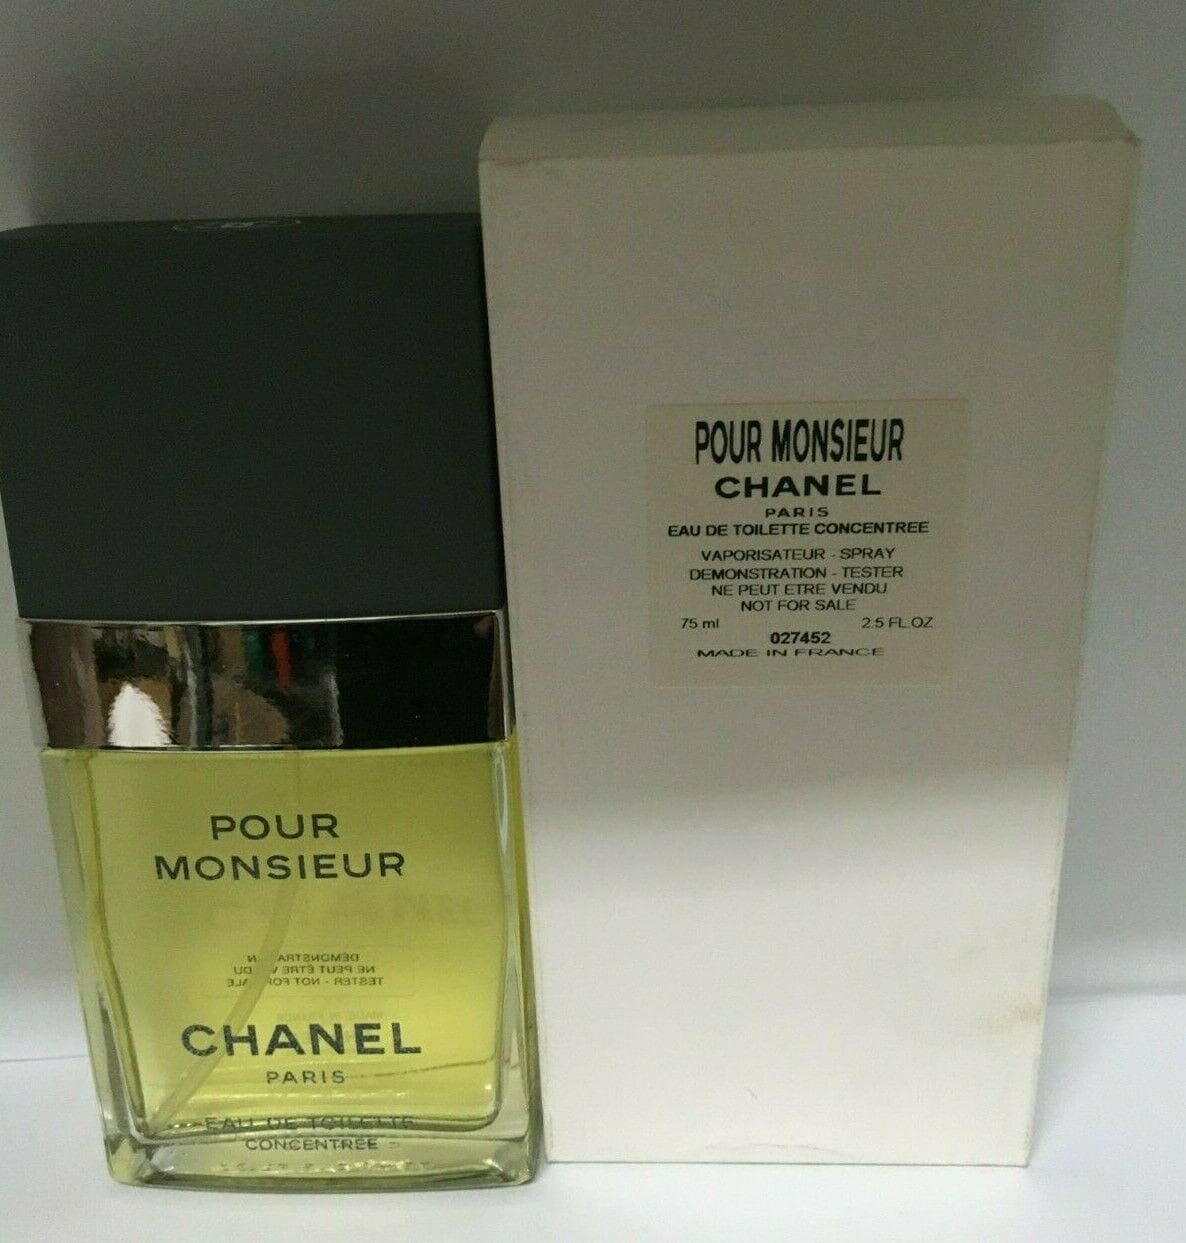 Chanel Pour Monsieur Eau De Toilette Concentree 2.5 Oz Spray